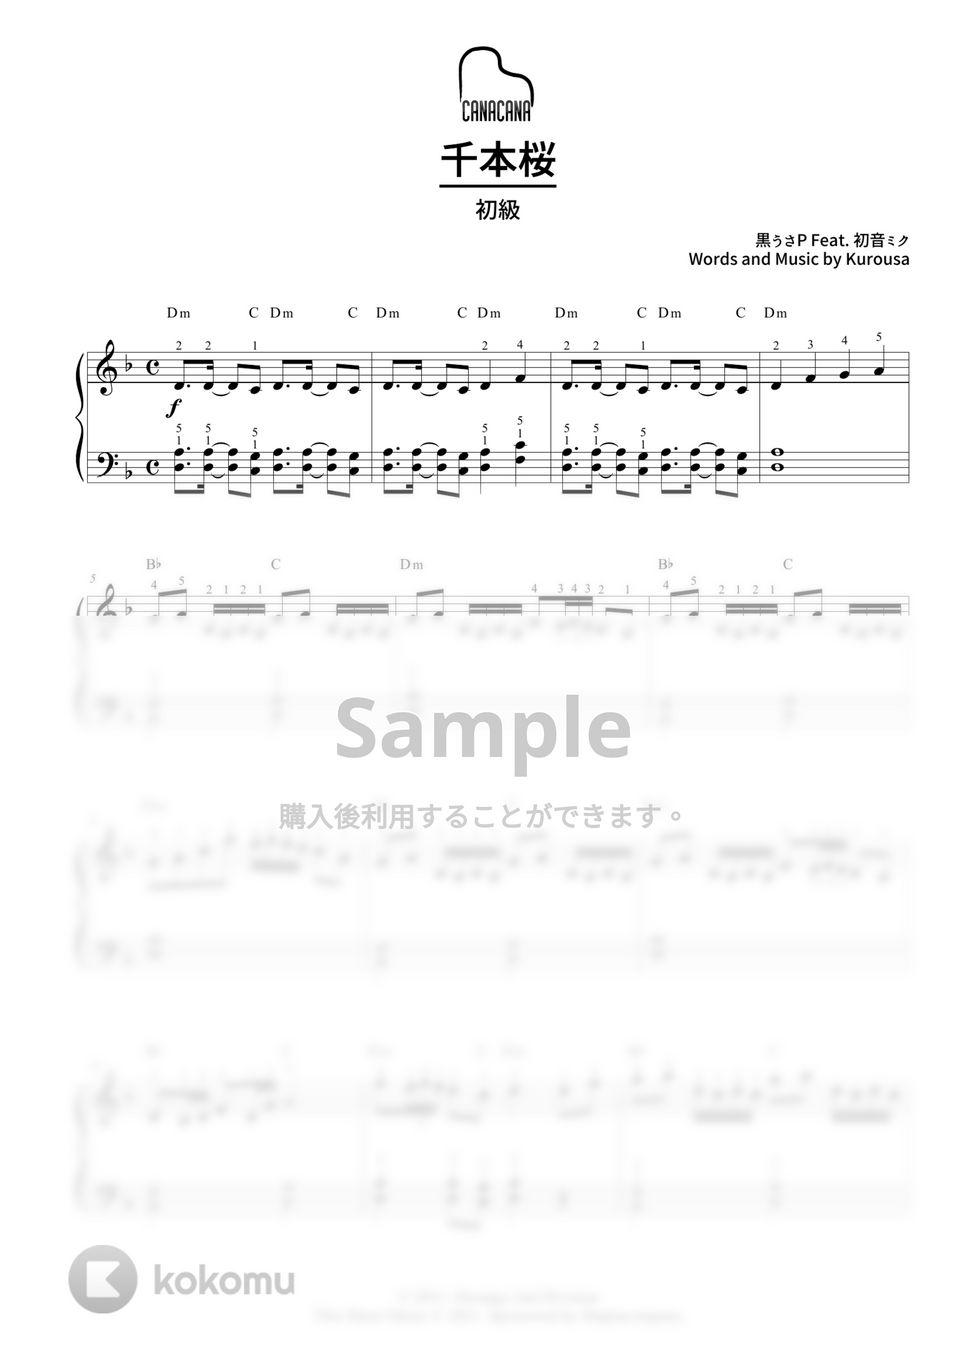 黒うさP Feat.初音ミク - 千本桜 (初級/カタカナドレミ・指番号・コード付き) by CANACANA family